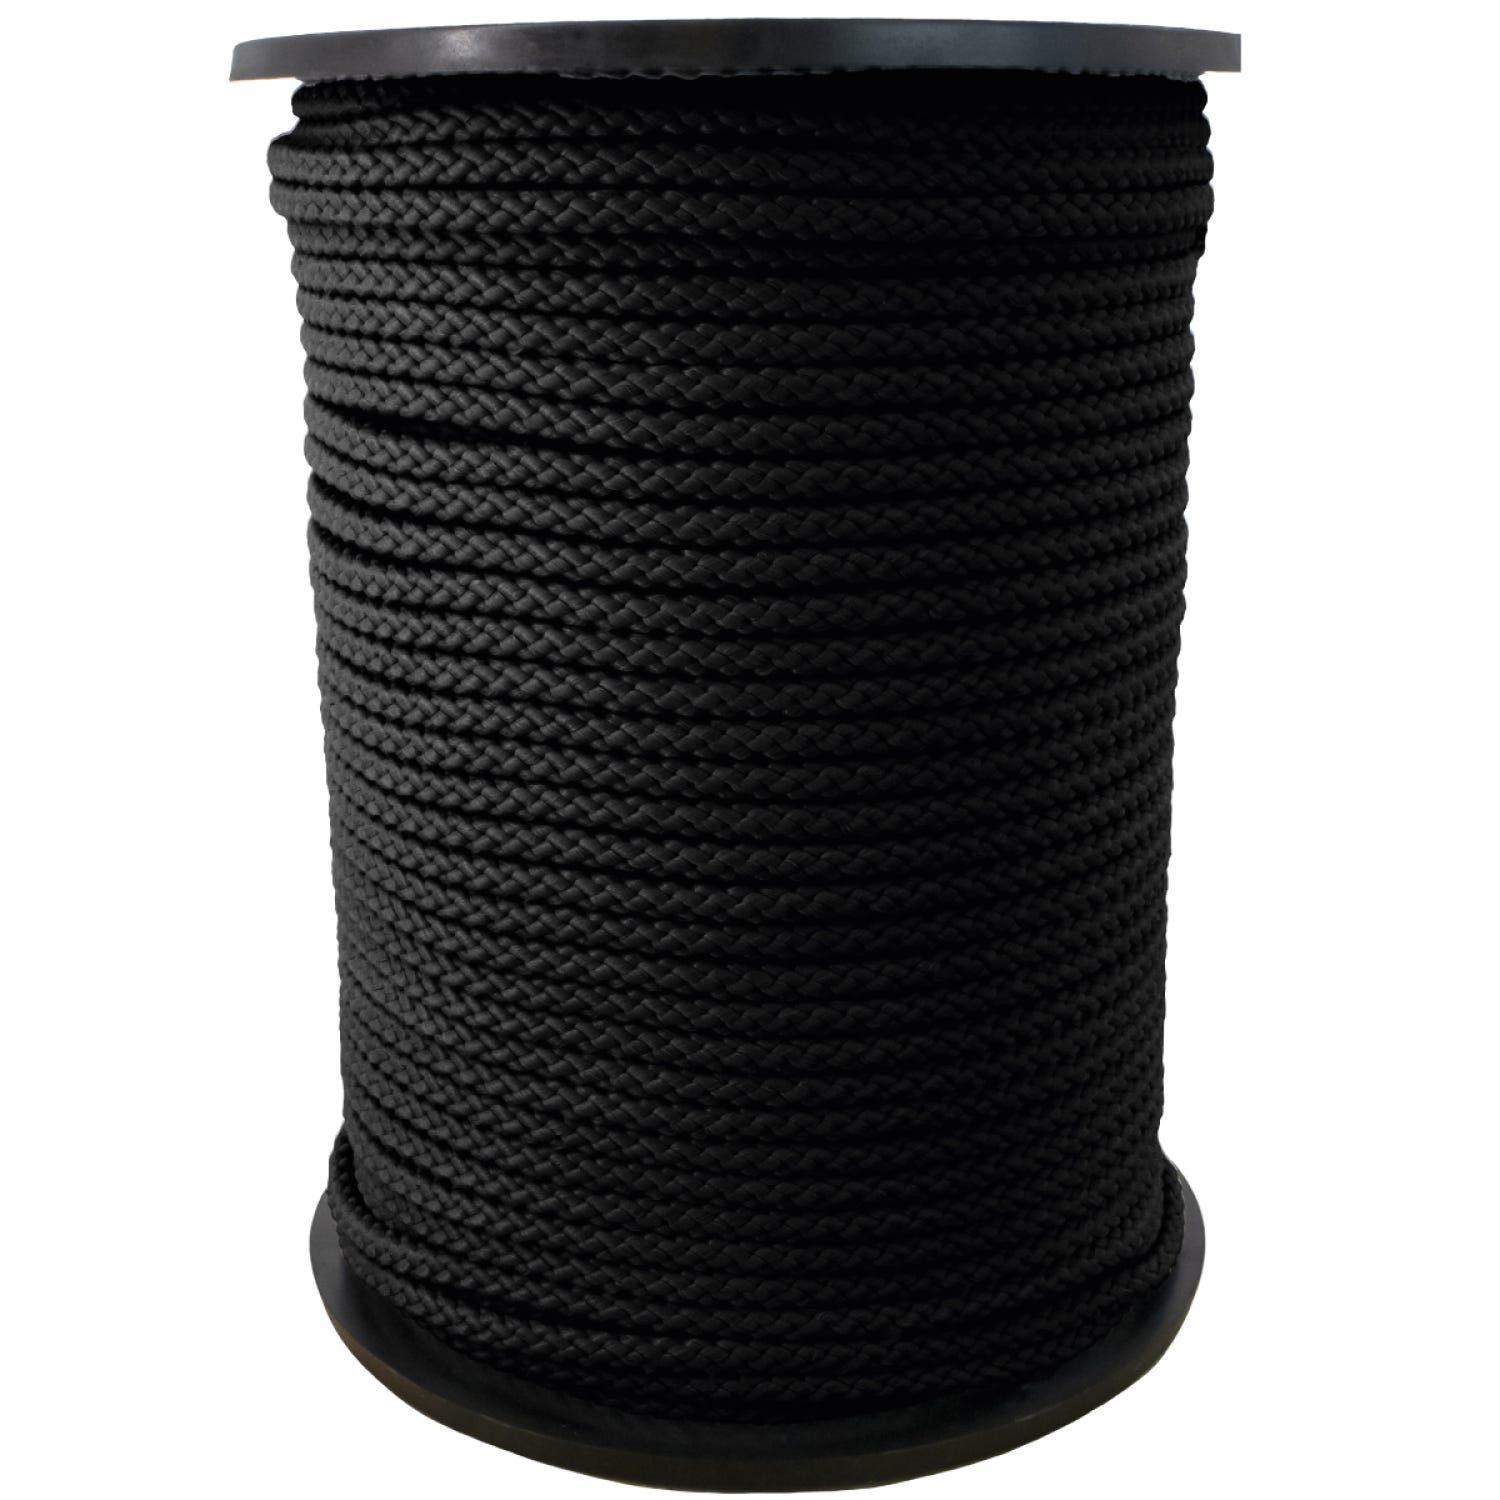 Bobine de corde tressée 4 mm x 100 m - noir - Conforama